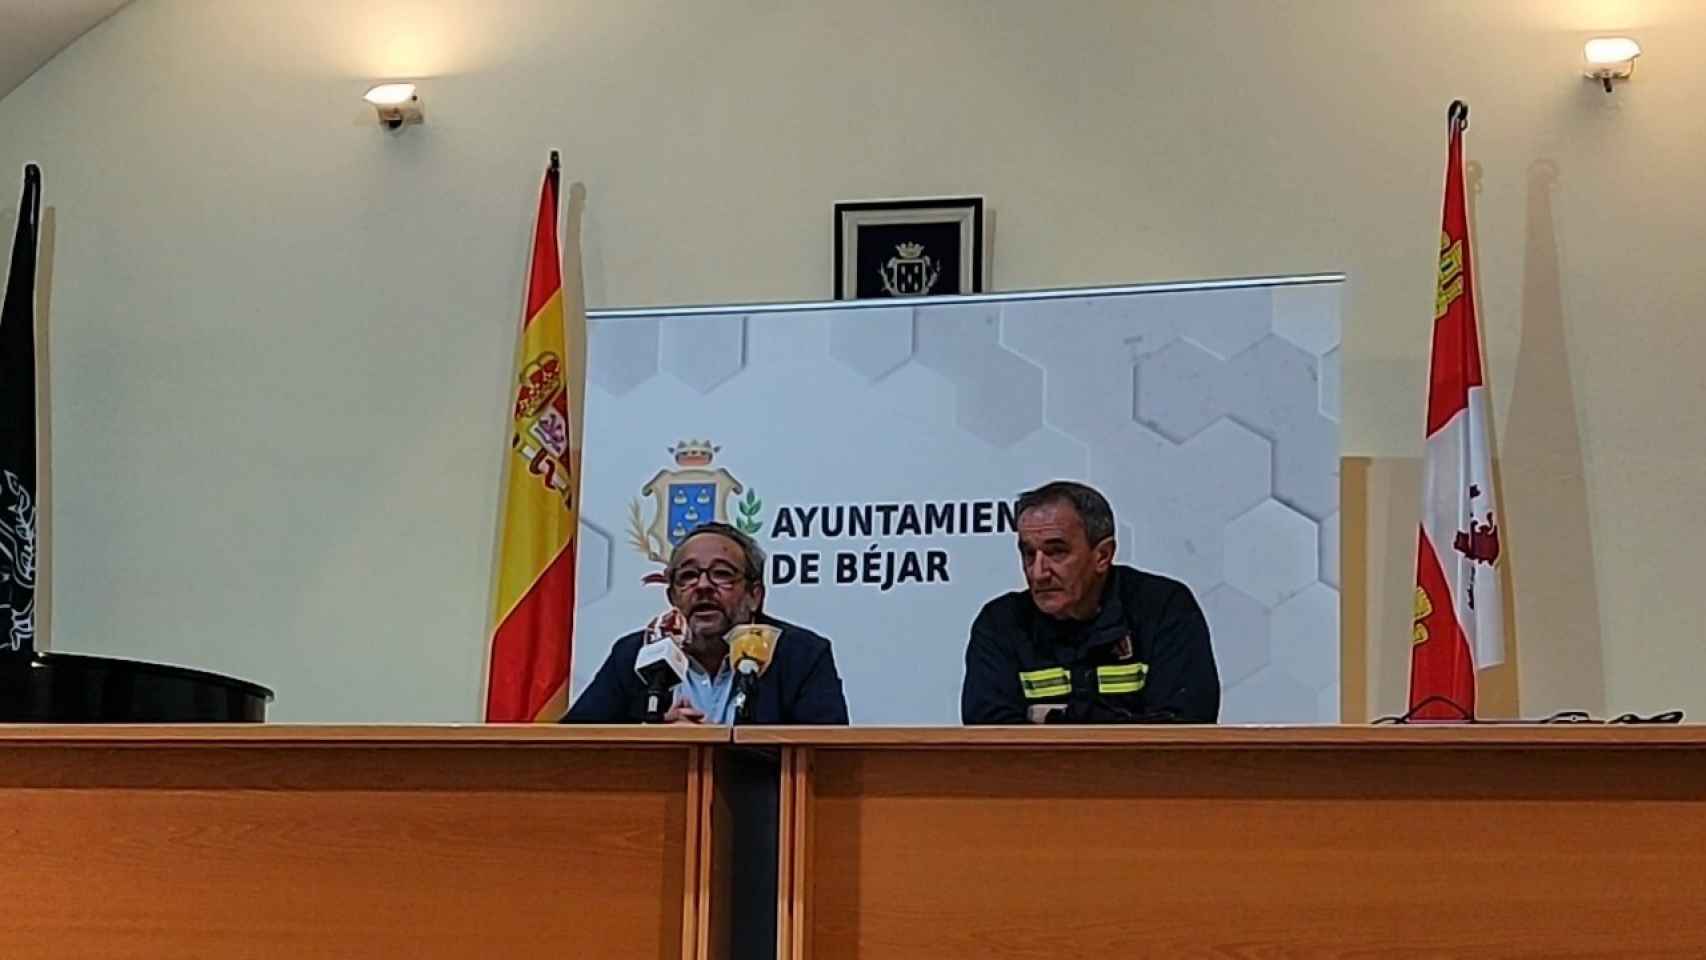 José Luis Rodríguez y Manuel Gallego presentaron las jornadas